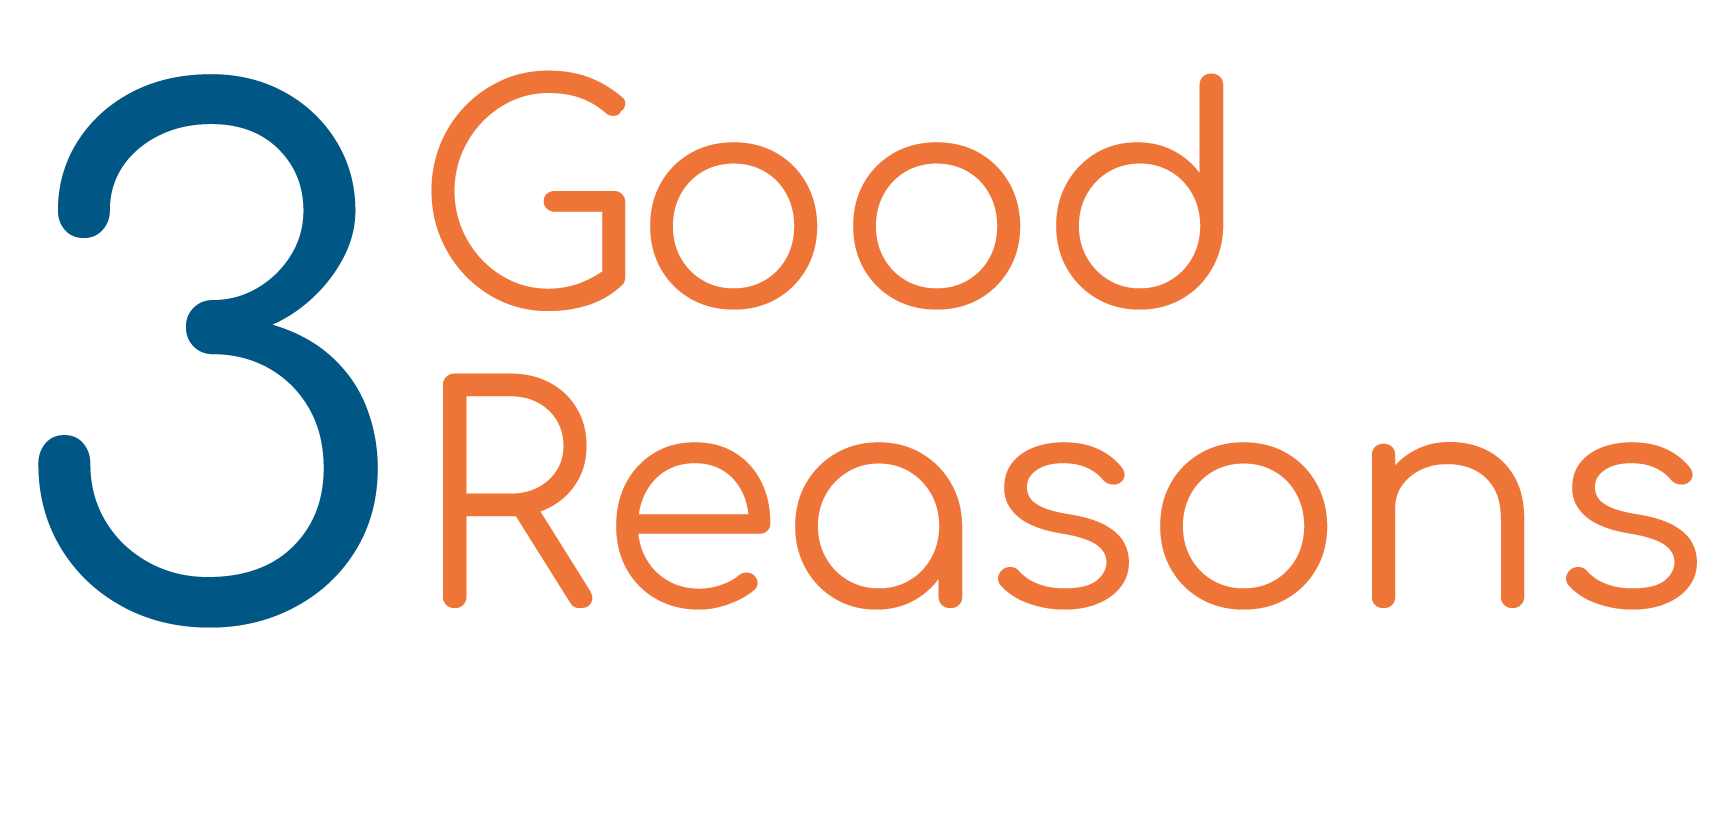 3 Good Reasons